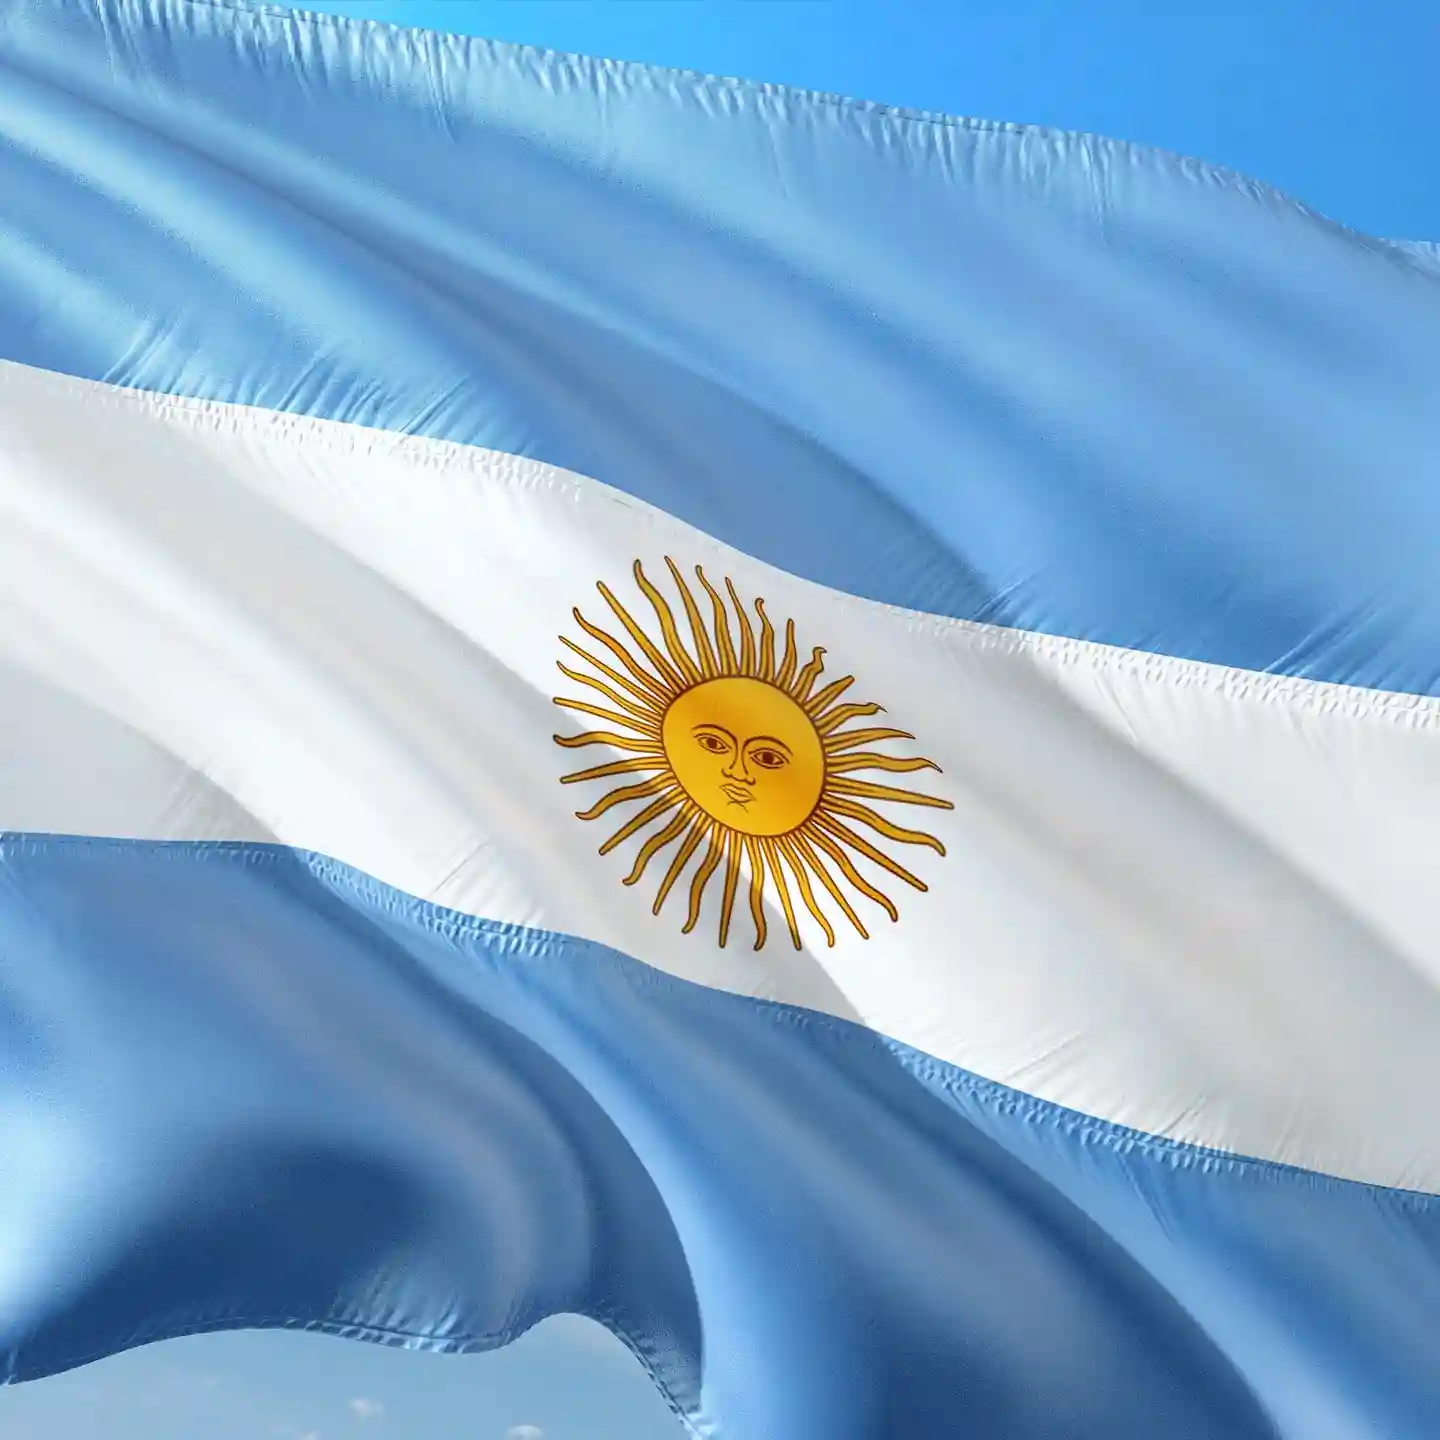 Encuestas-remuneradas-en-argentina